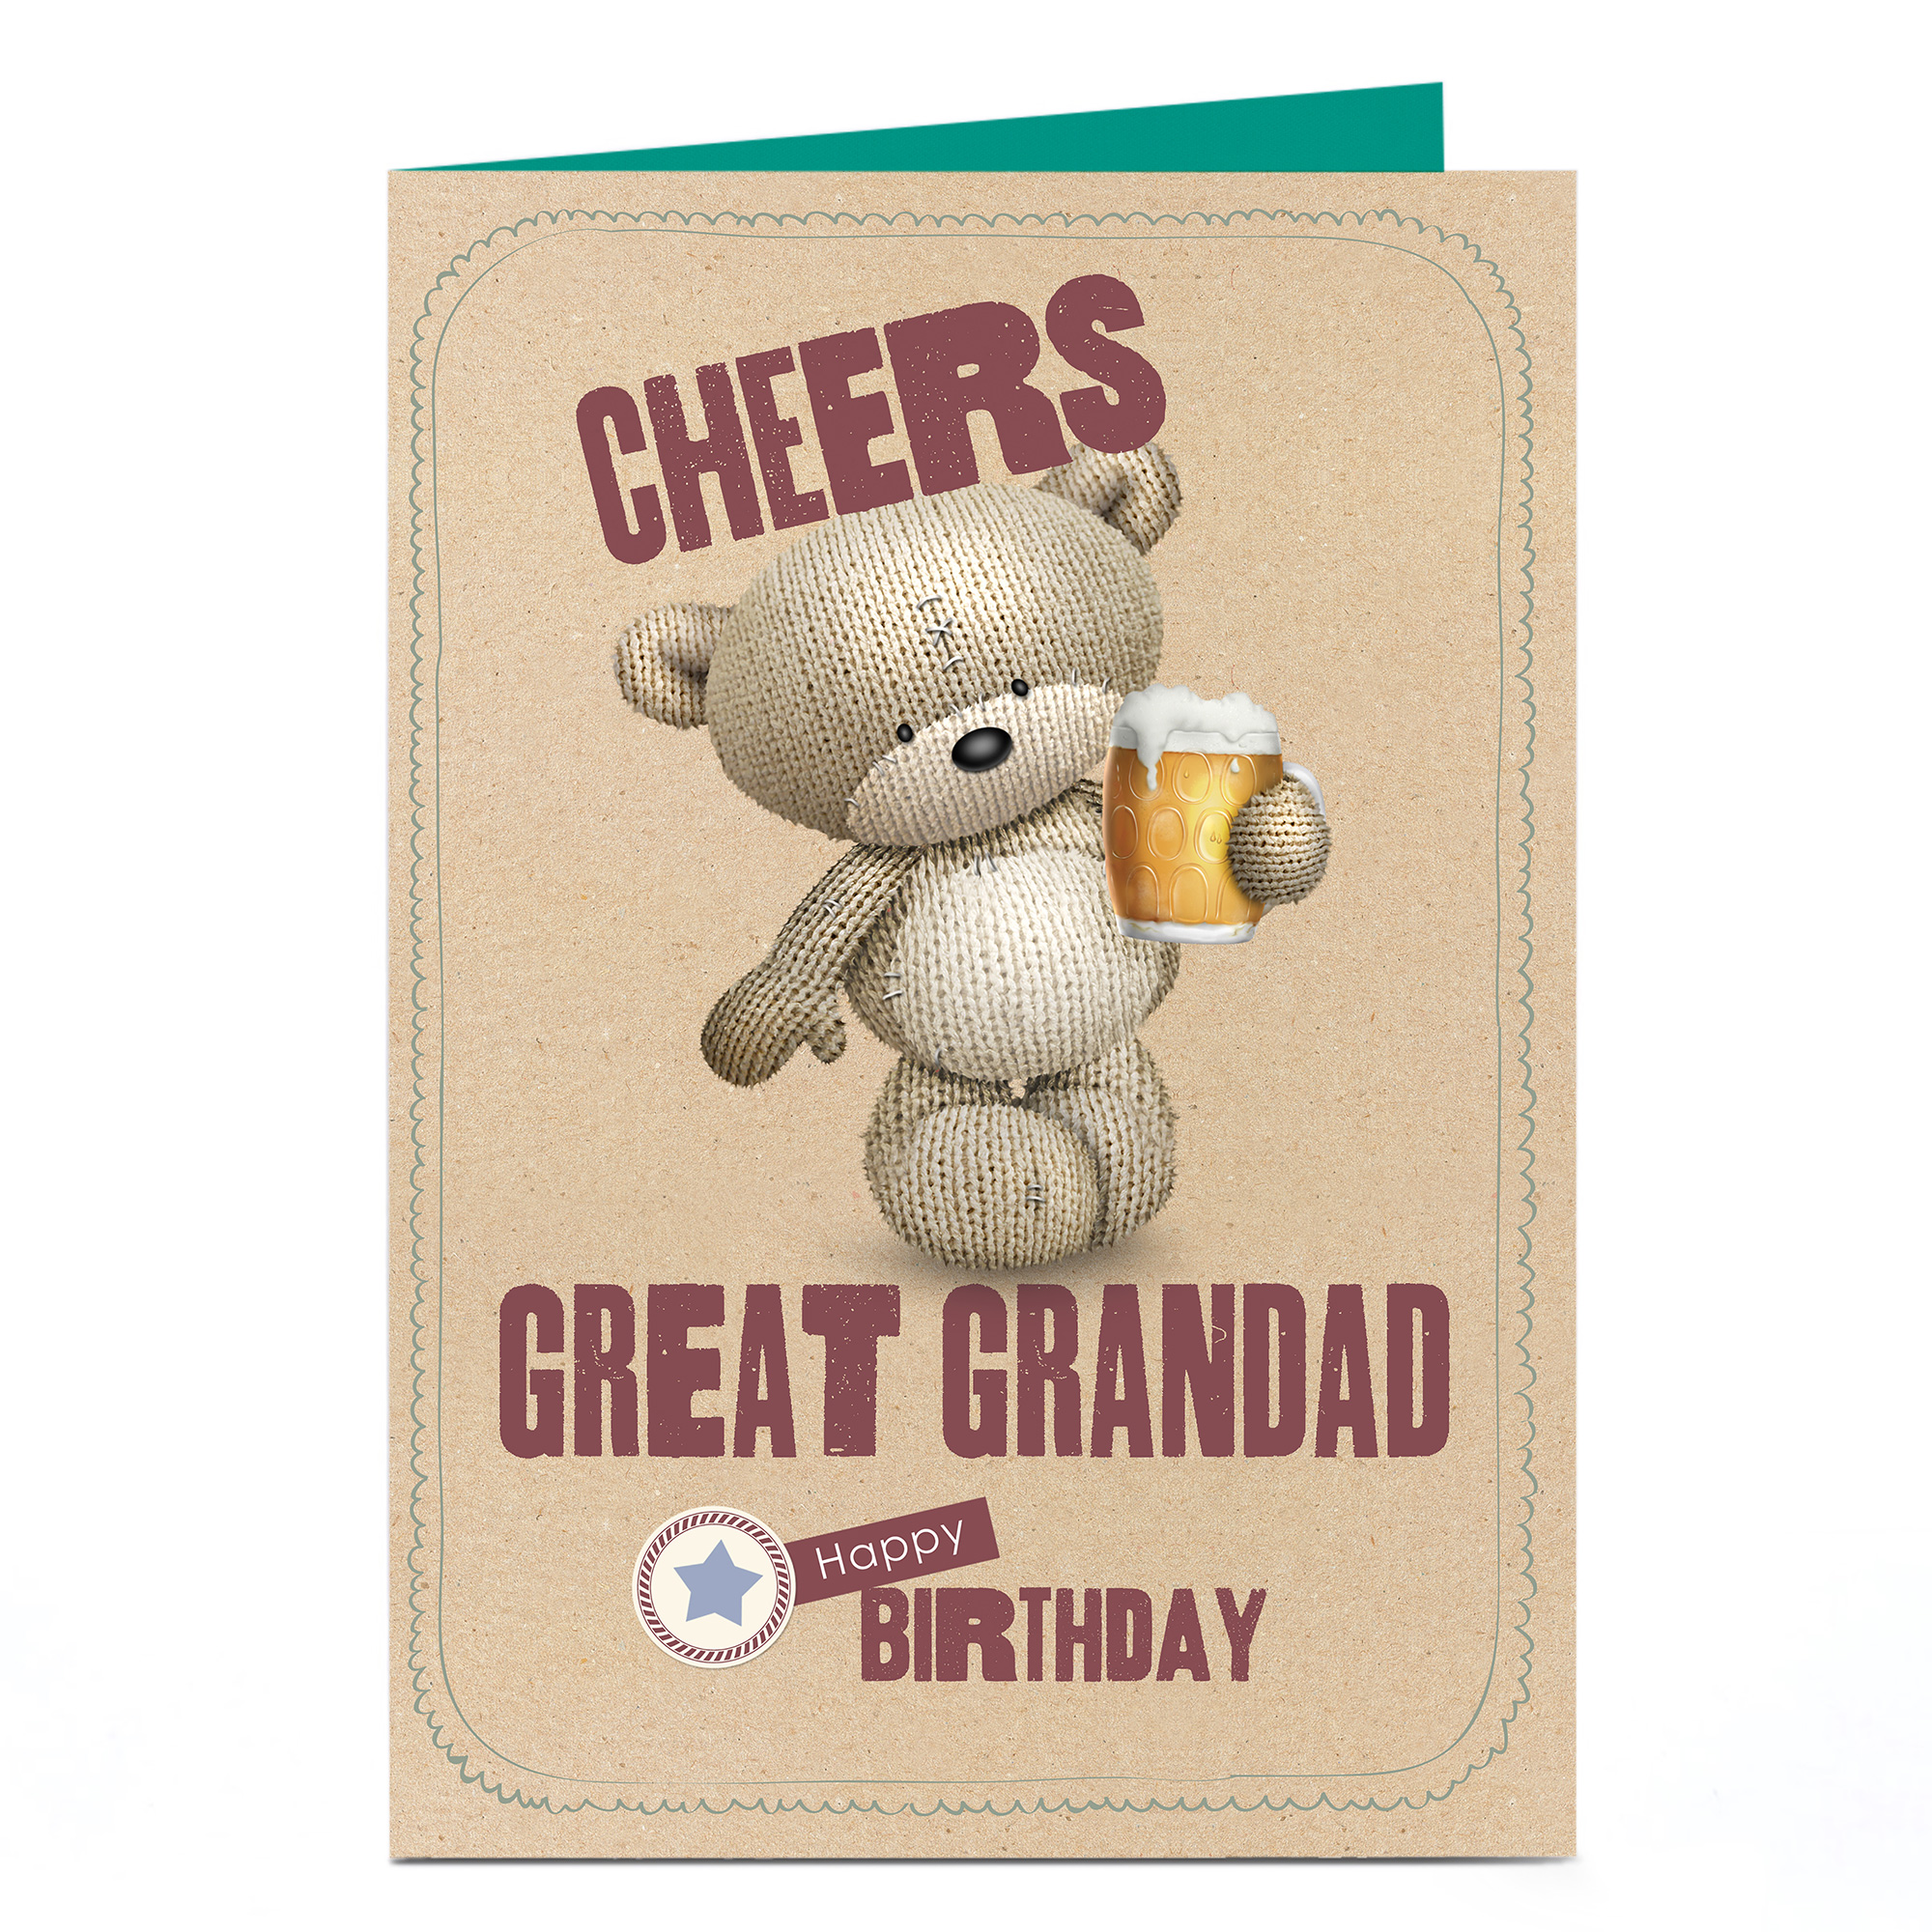 Personalised Hugs Birthday Card - Cheers [Great Grandad]